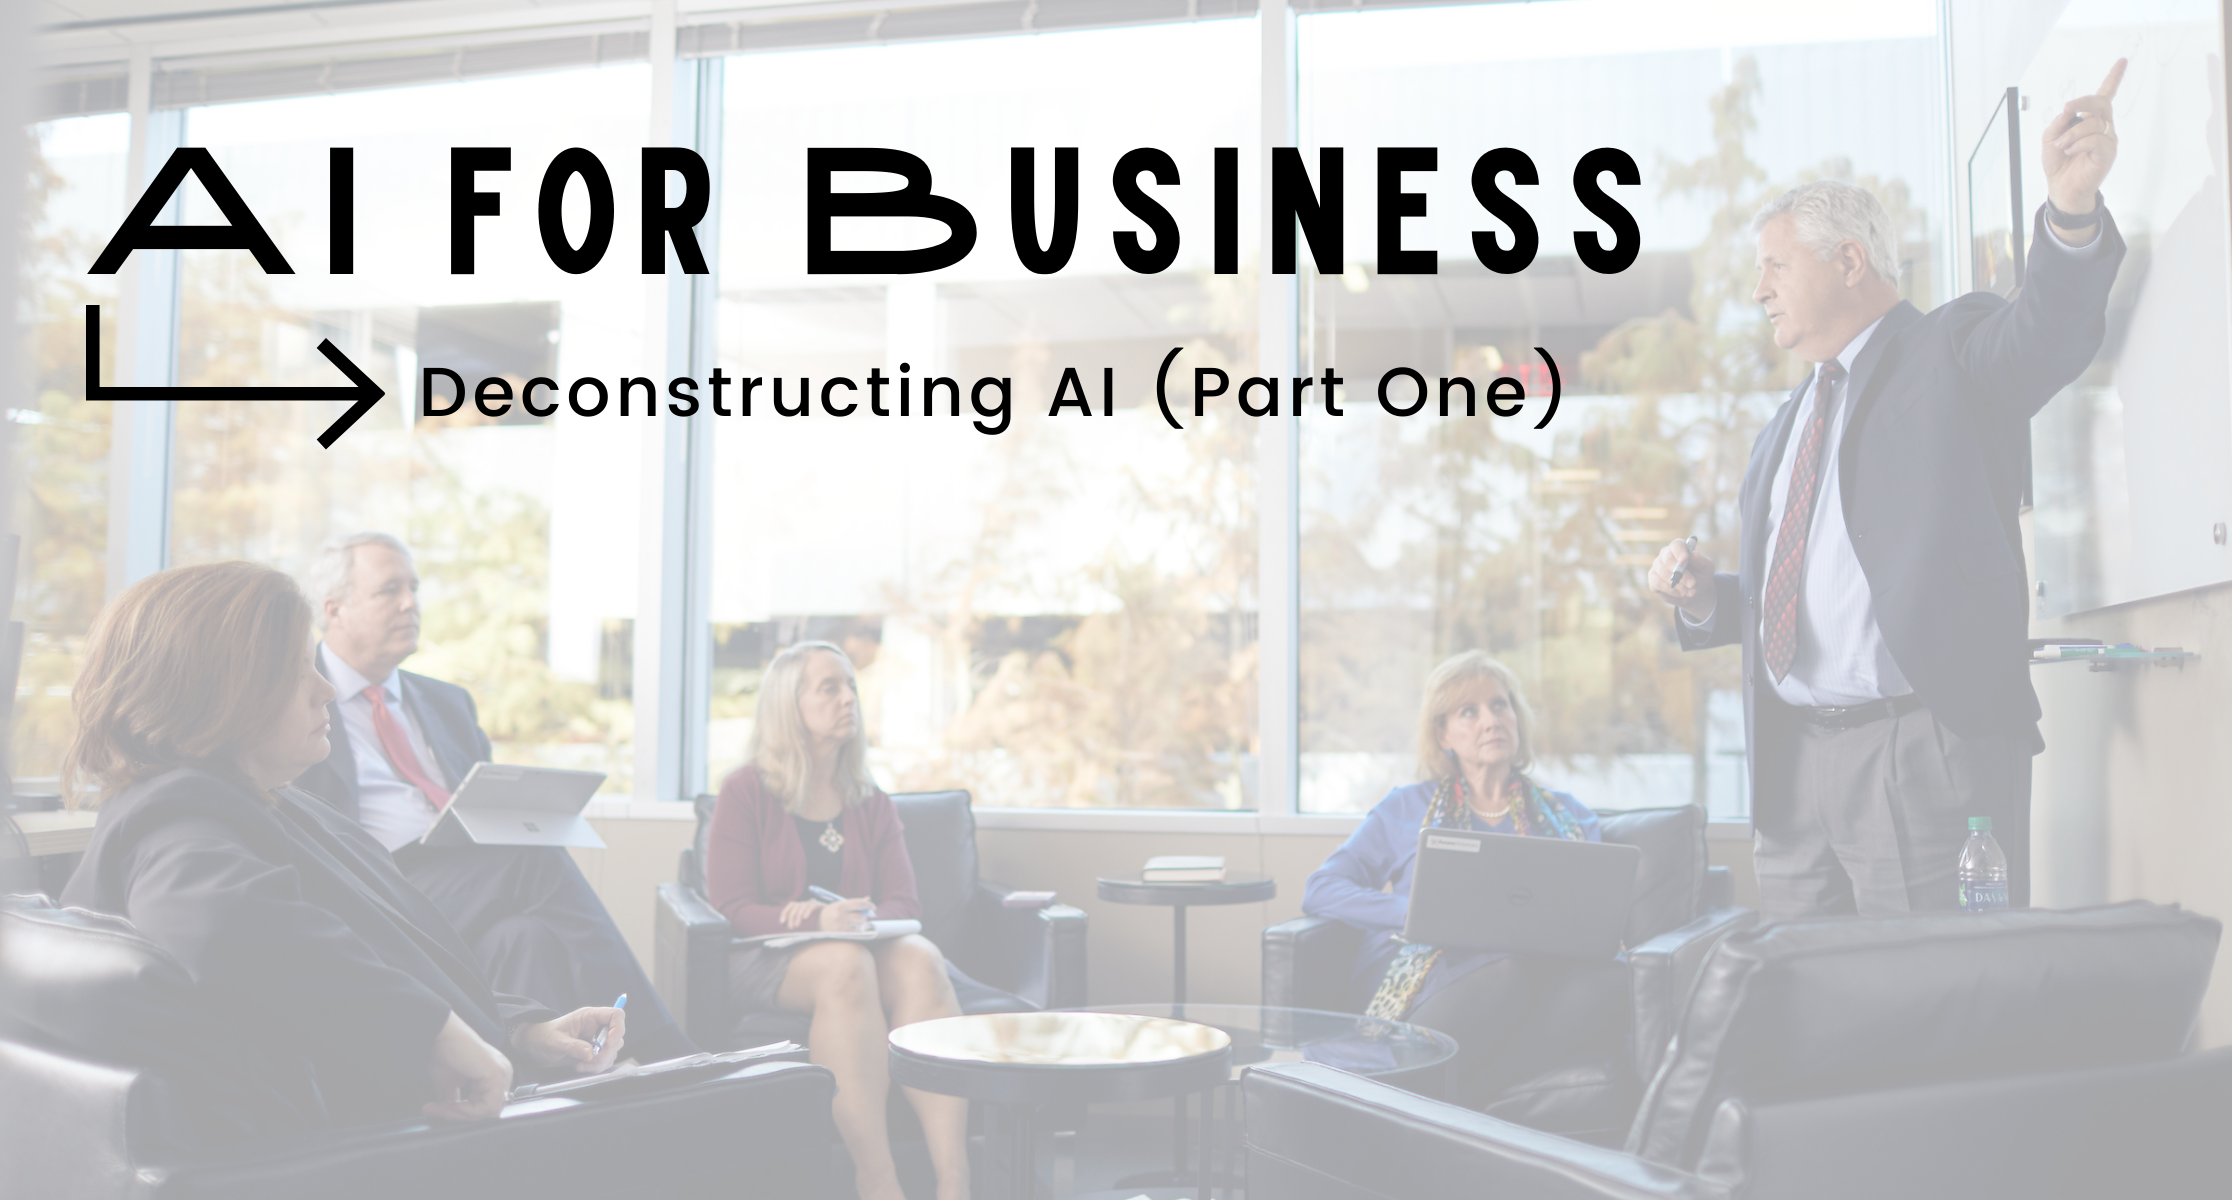 Access Sciences Blog AI for Business Deconstructing AI Part 1